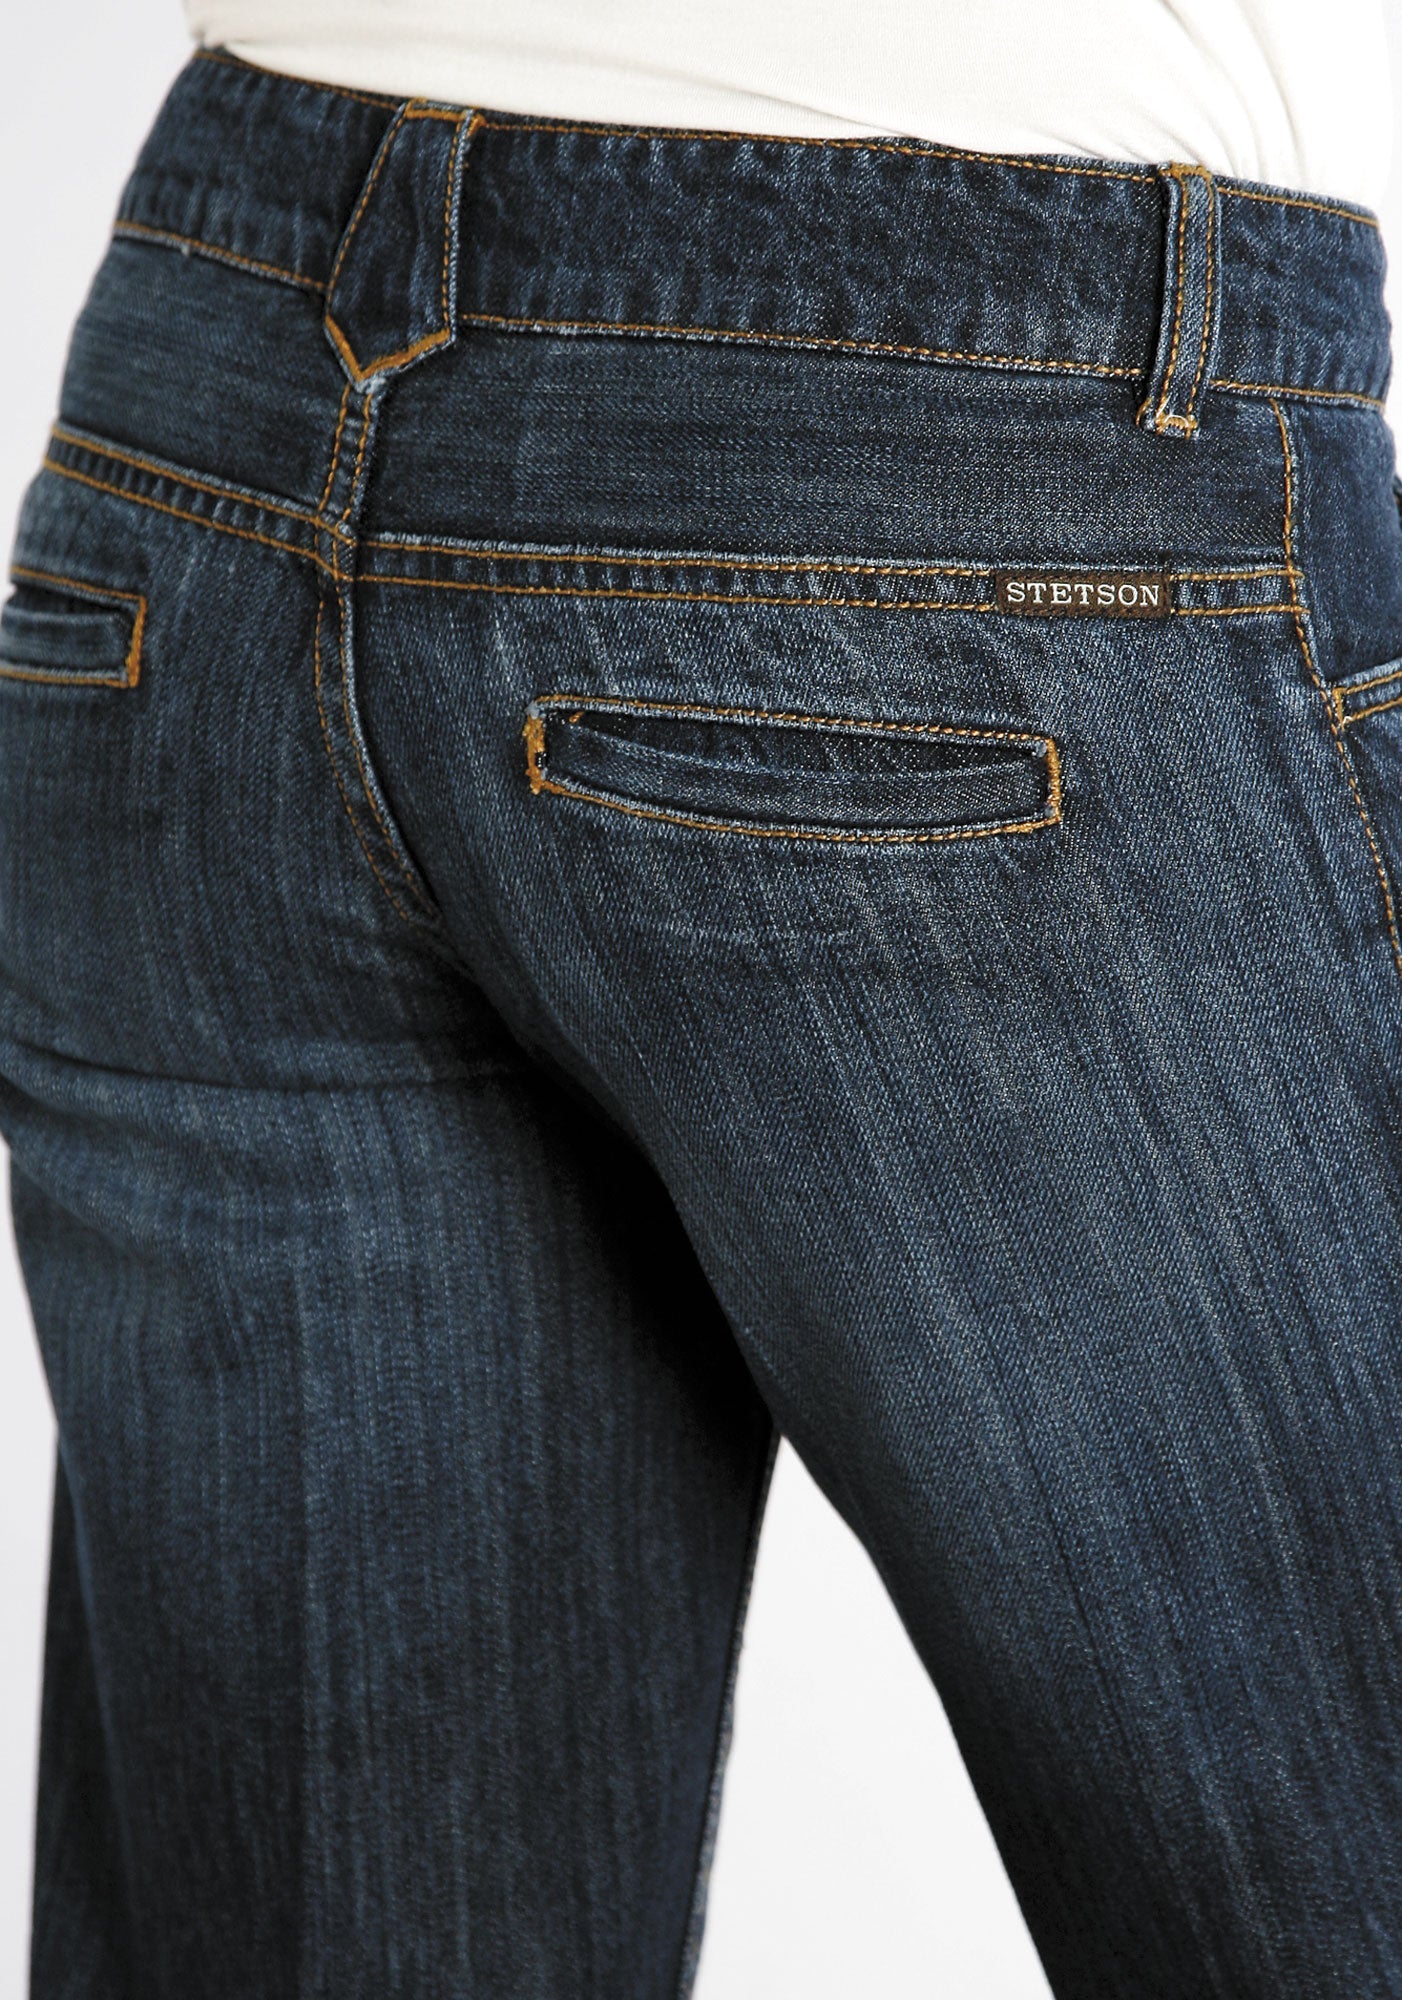 stetson women's trouser jeans